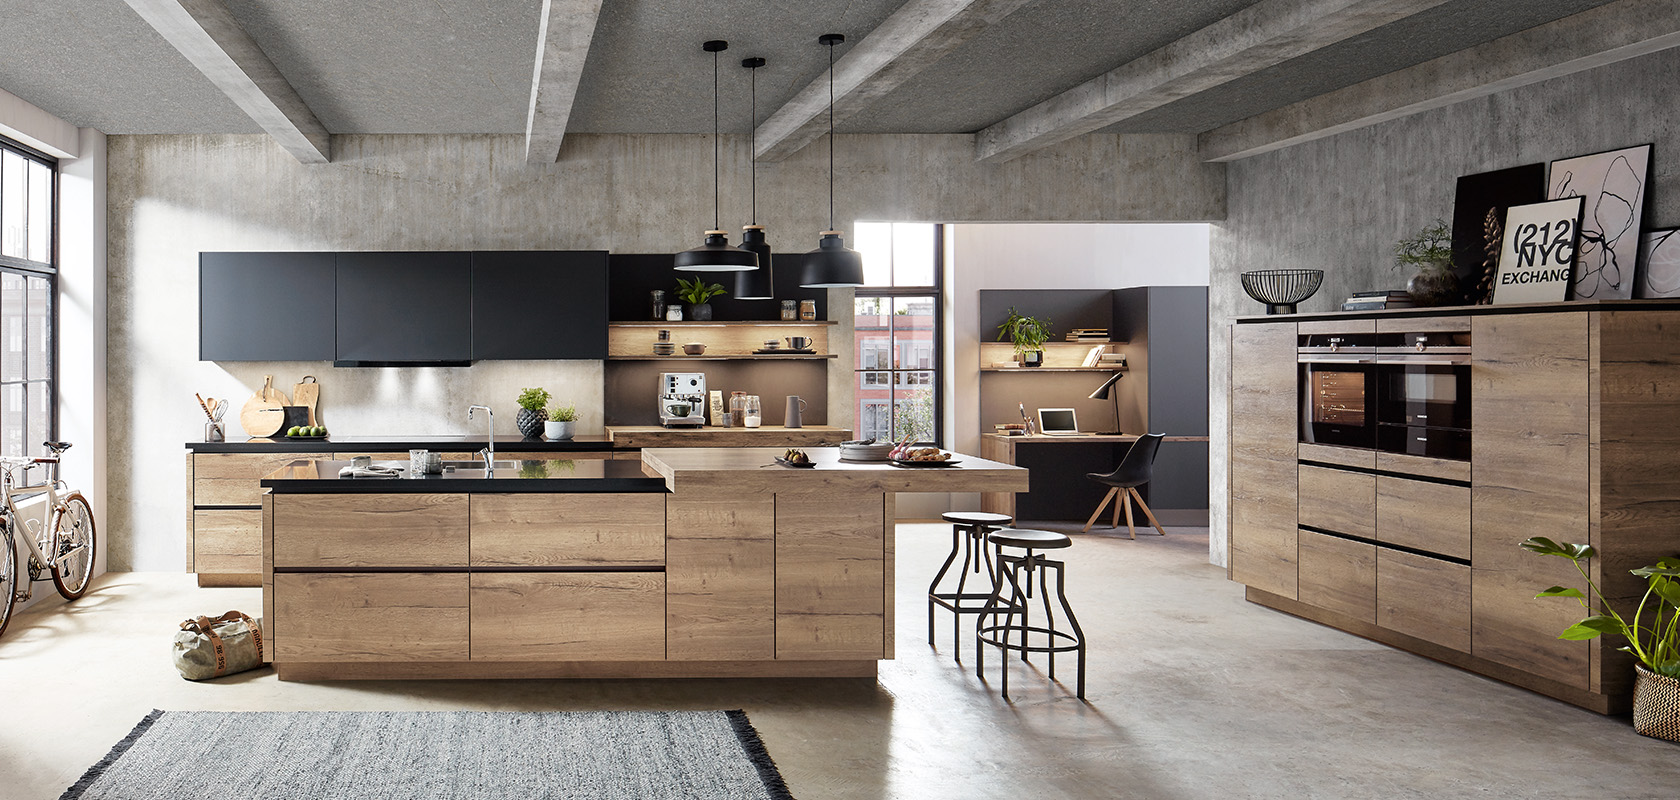 Nowoczesne wnętrze kuchni, które łączy w sobie elementy industrialne i rustykalne, z akcentami drewna, stalowymi urządzeniami AGD oraz eleganckim barem śniadaniowym.